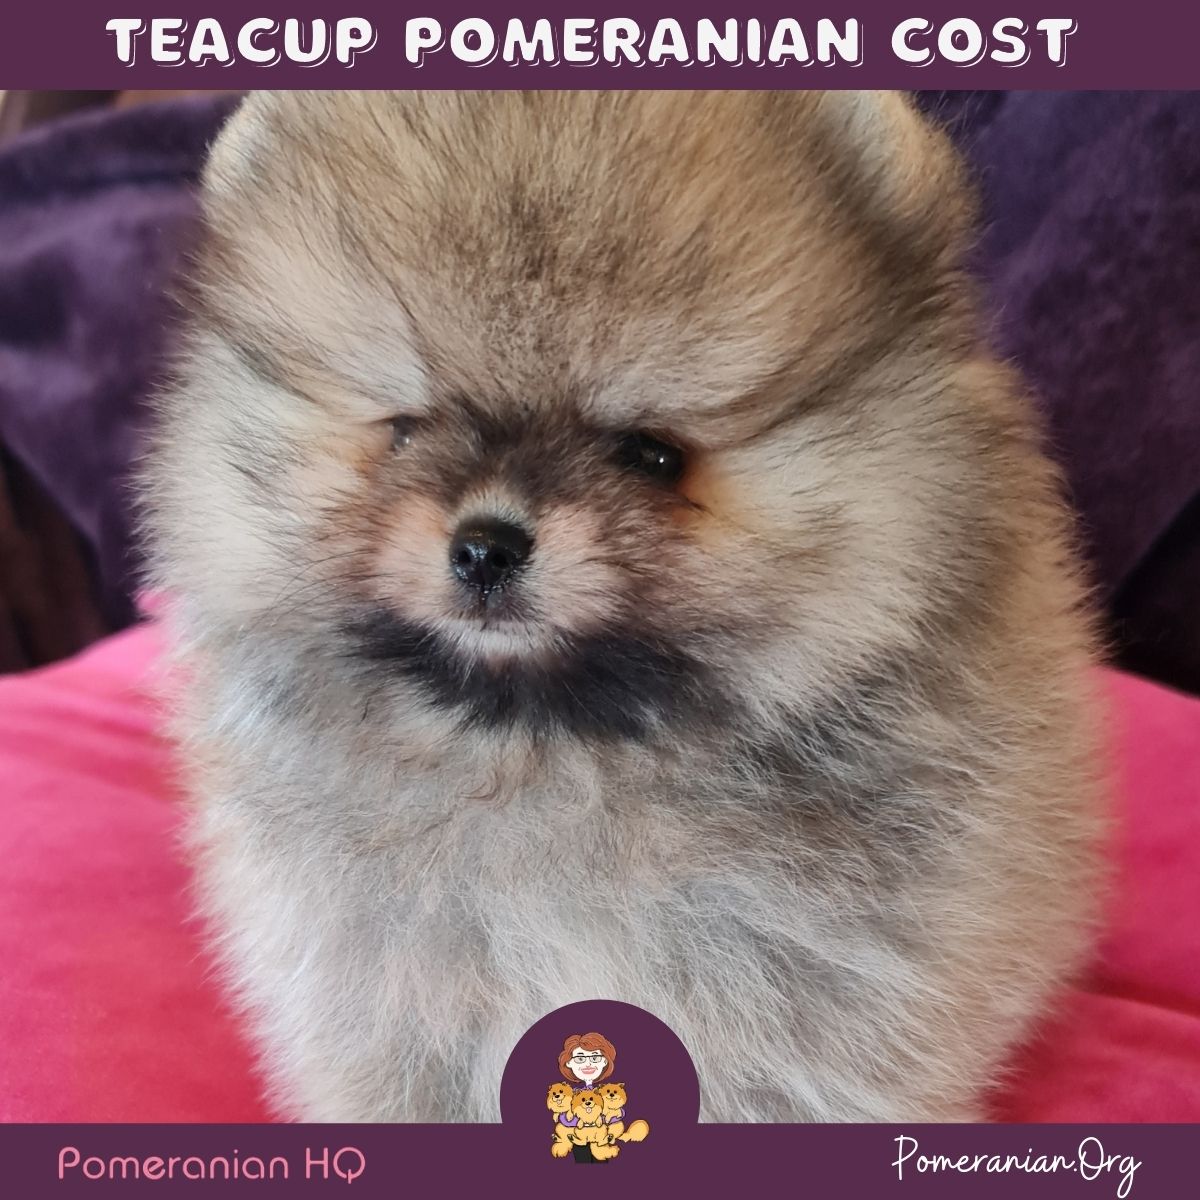 Teacup Pomeranian Cost